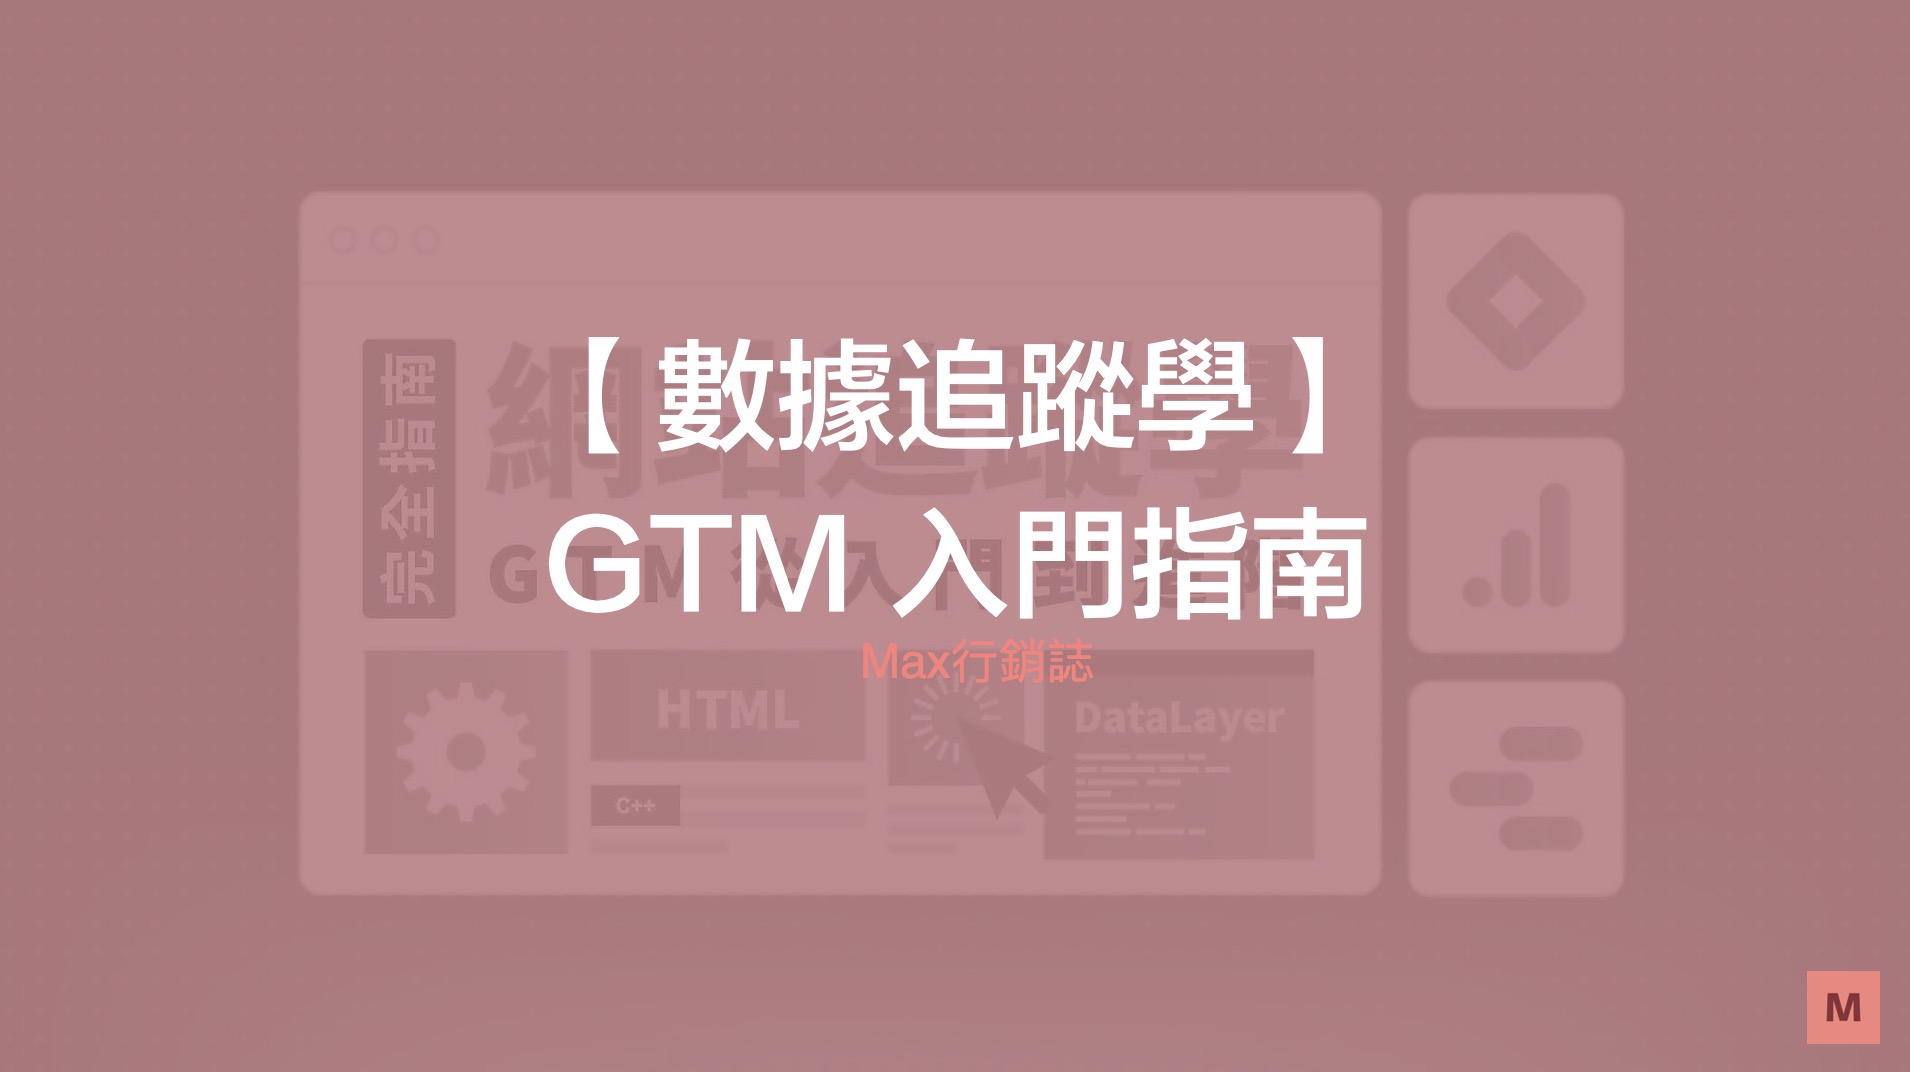 GTM 數據追蹤學 - 入門指南